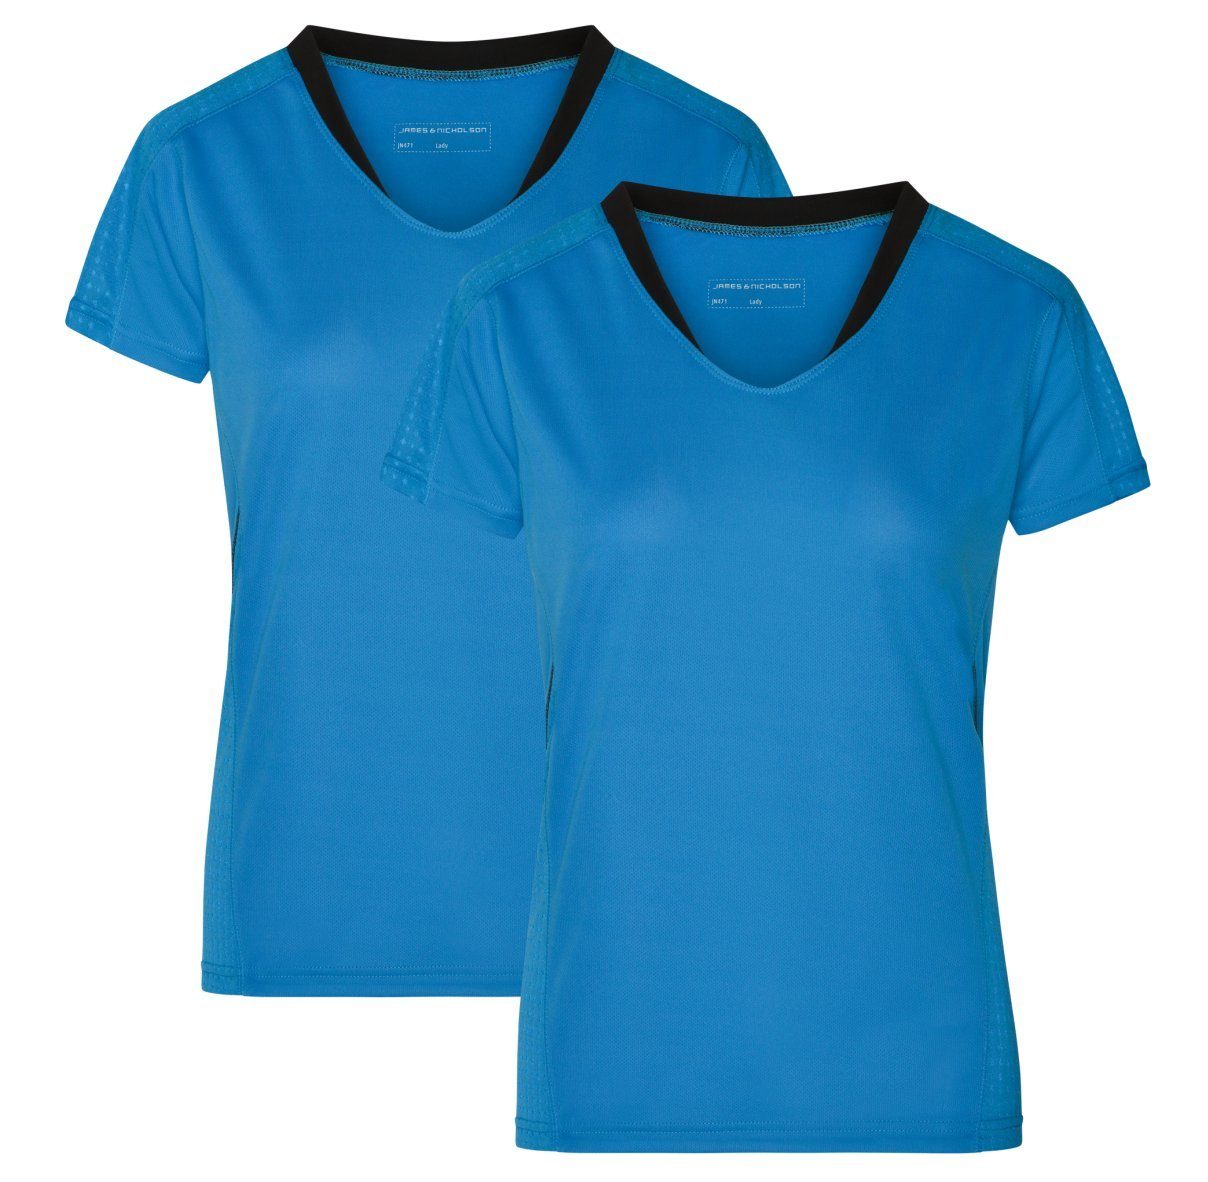 James & Nicholson Laufshirt Doppelpack Damen Kurzarm Laufshirt Running T-Shirt JN471 (Doppelpack, 2 Stück) Atmungsaktiv und Feuchtigkeitsregulierend atlantic/black